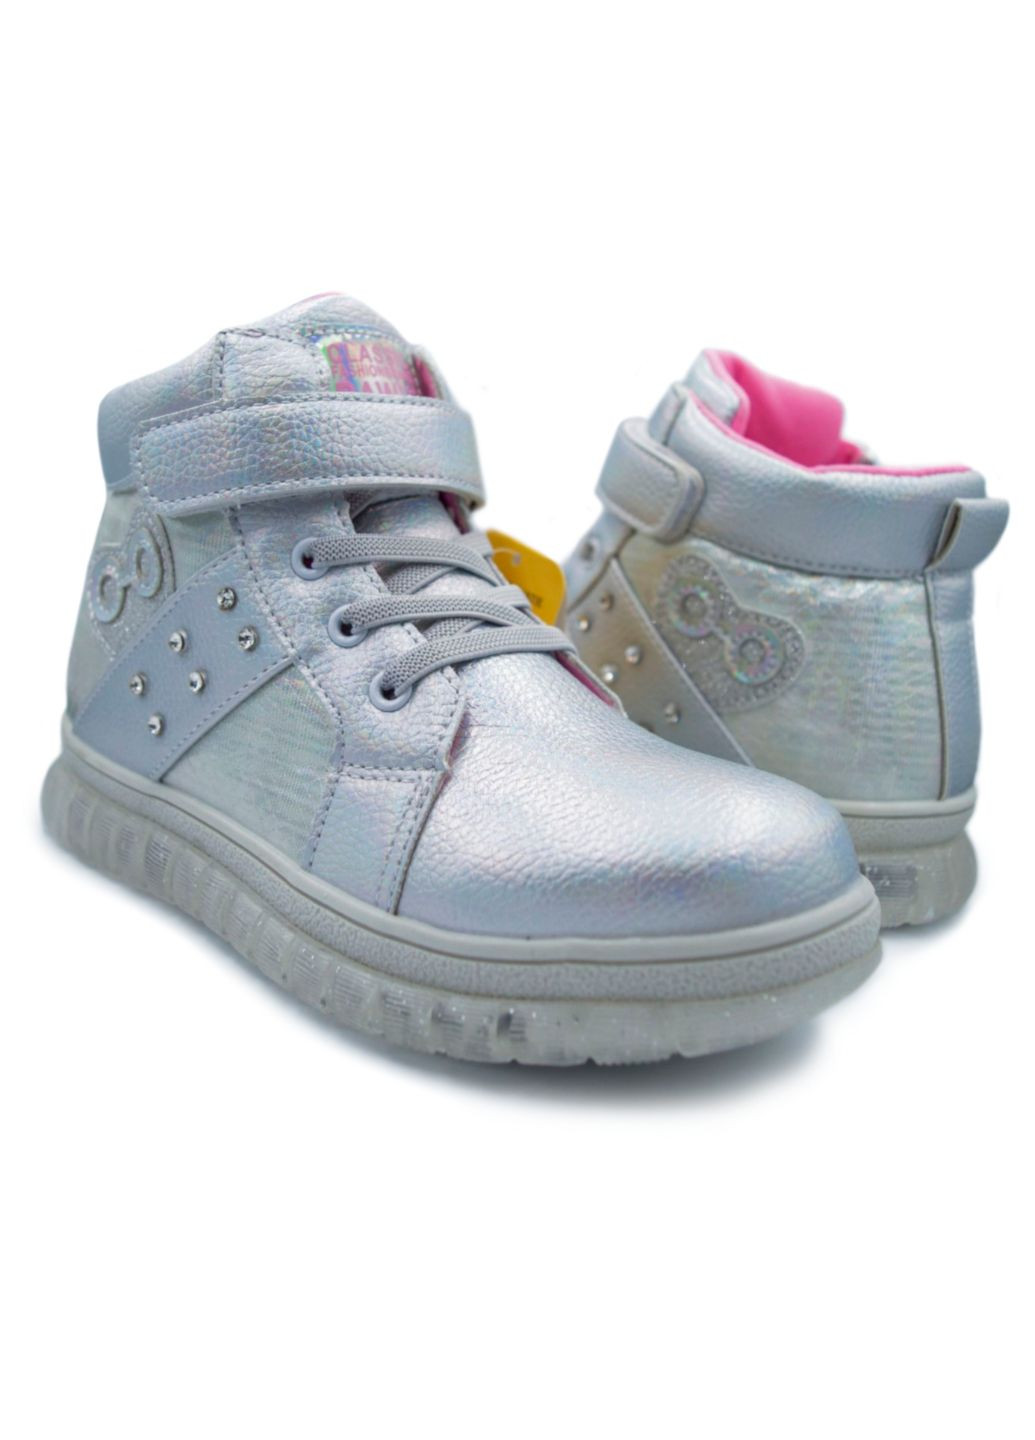 Демісезонне взуття для дівчинки, чобітки, черевики, ботинки, р.28-33 Clibee срібні